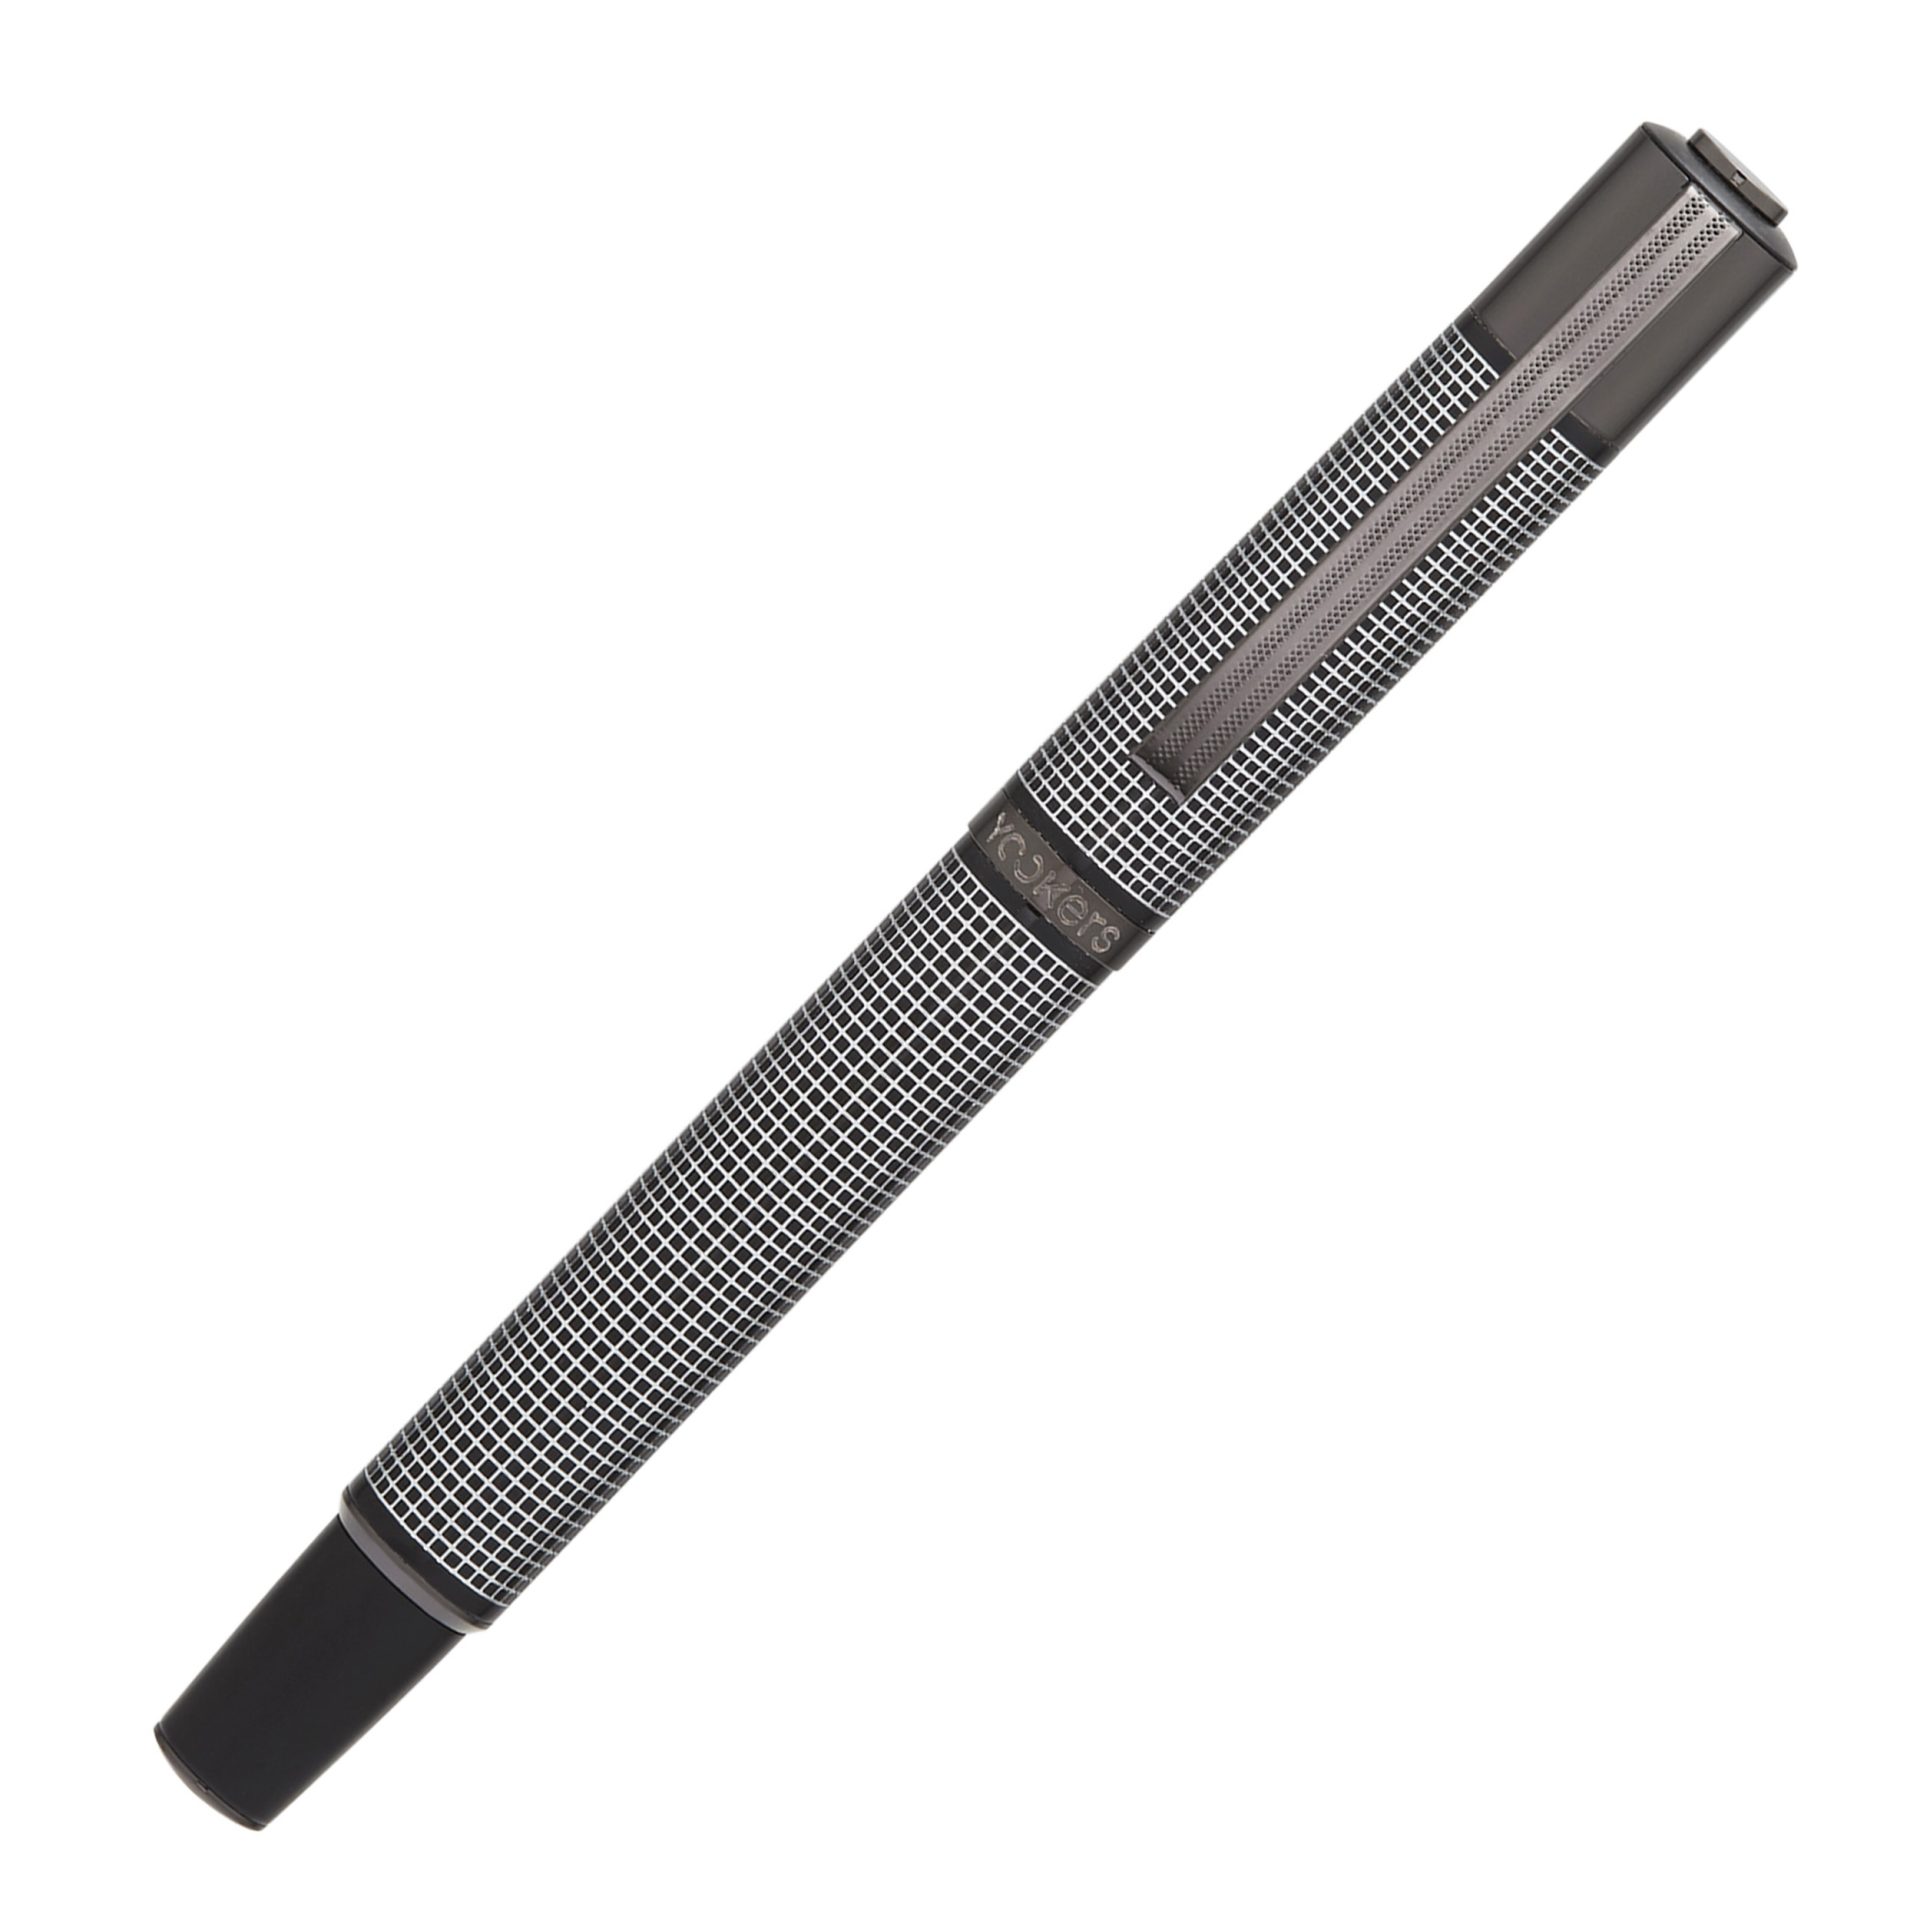 pen review : Yookers Metis Fiber Pen – inkxplorations